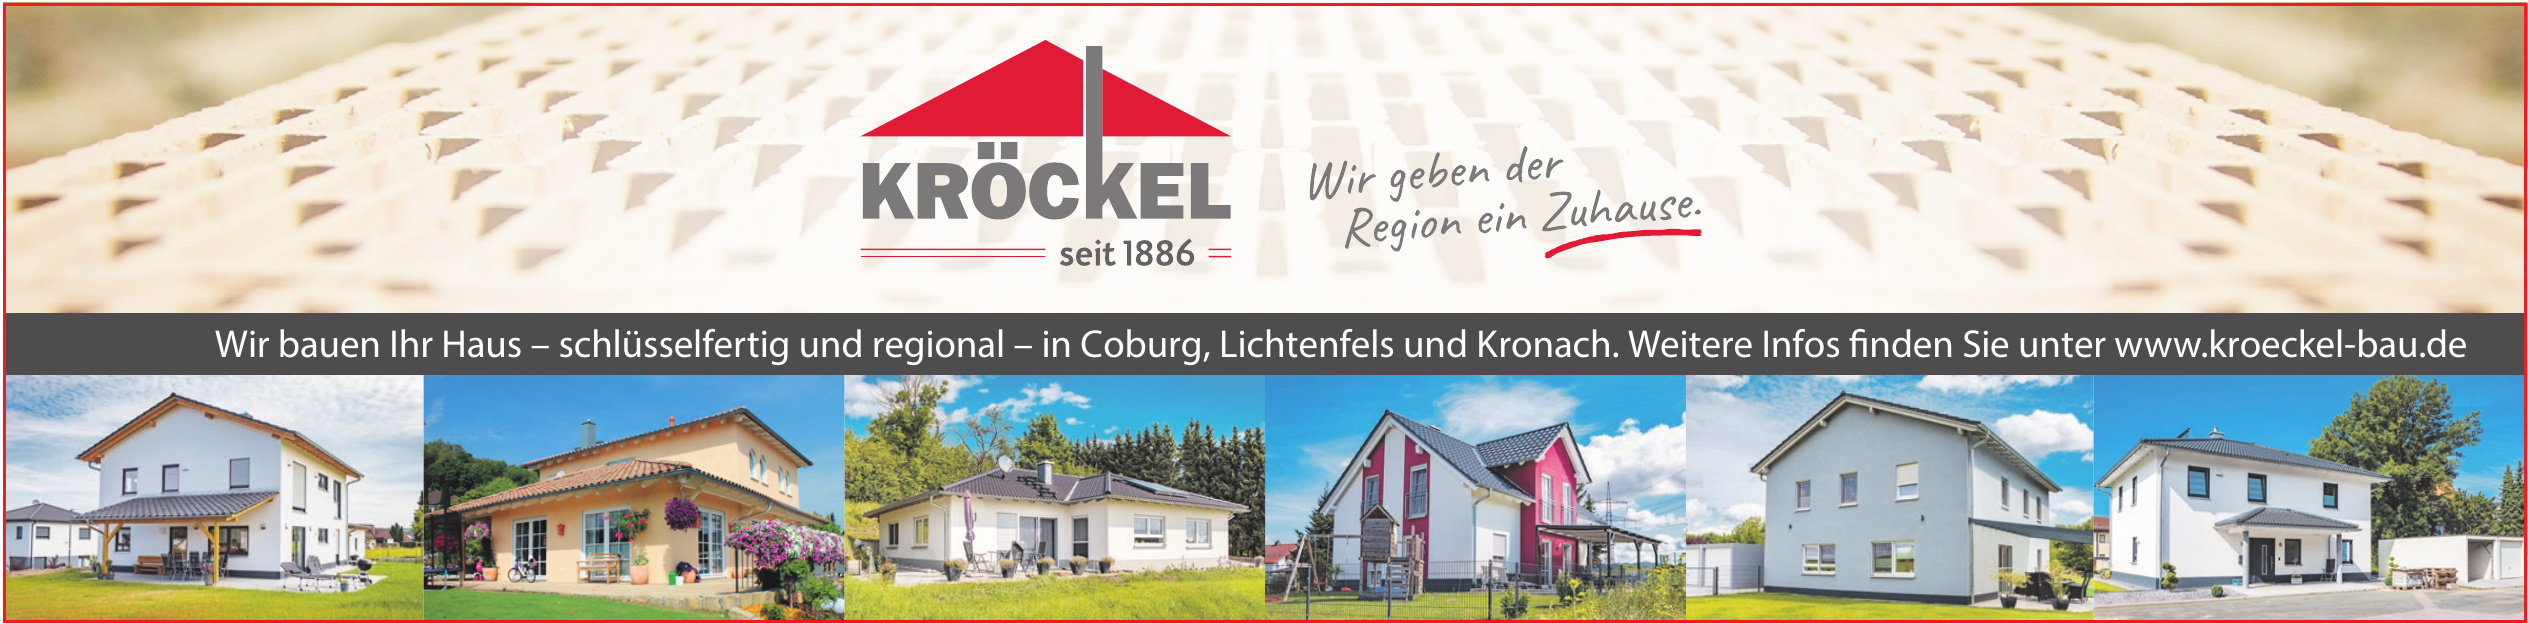 Kröckel Bau GmbH & Co. KG